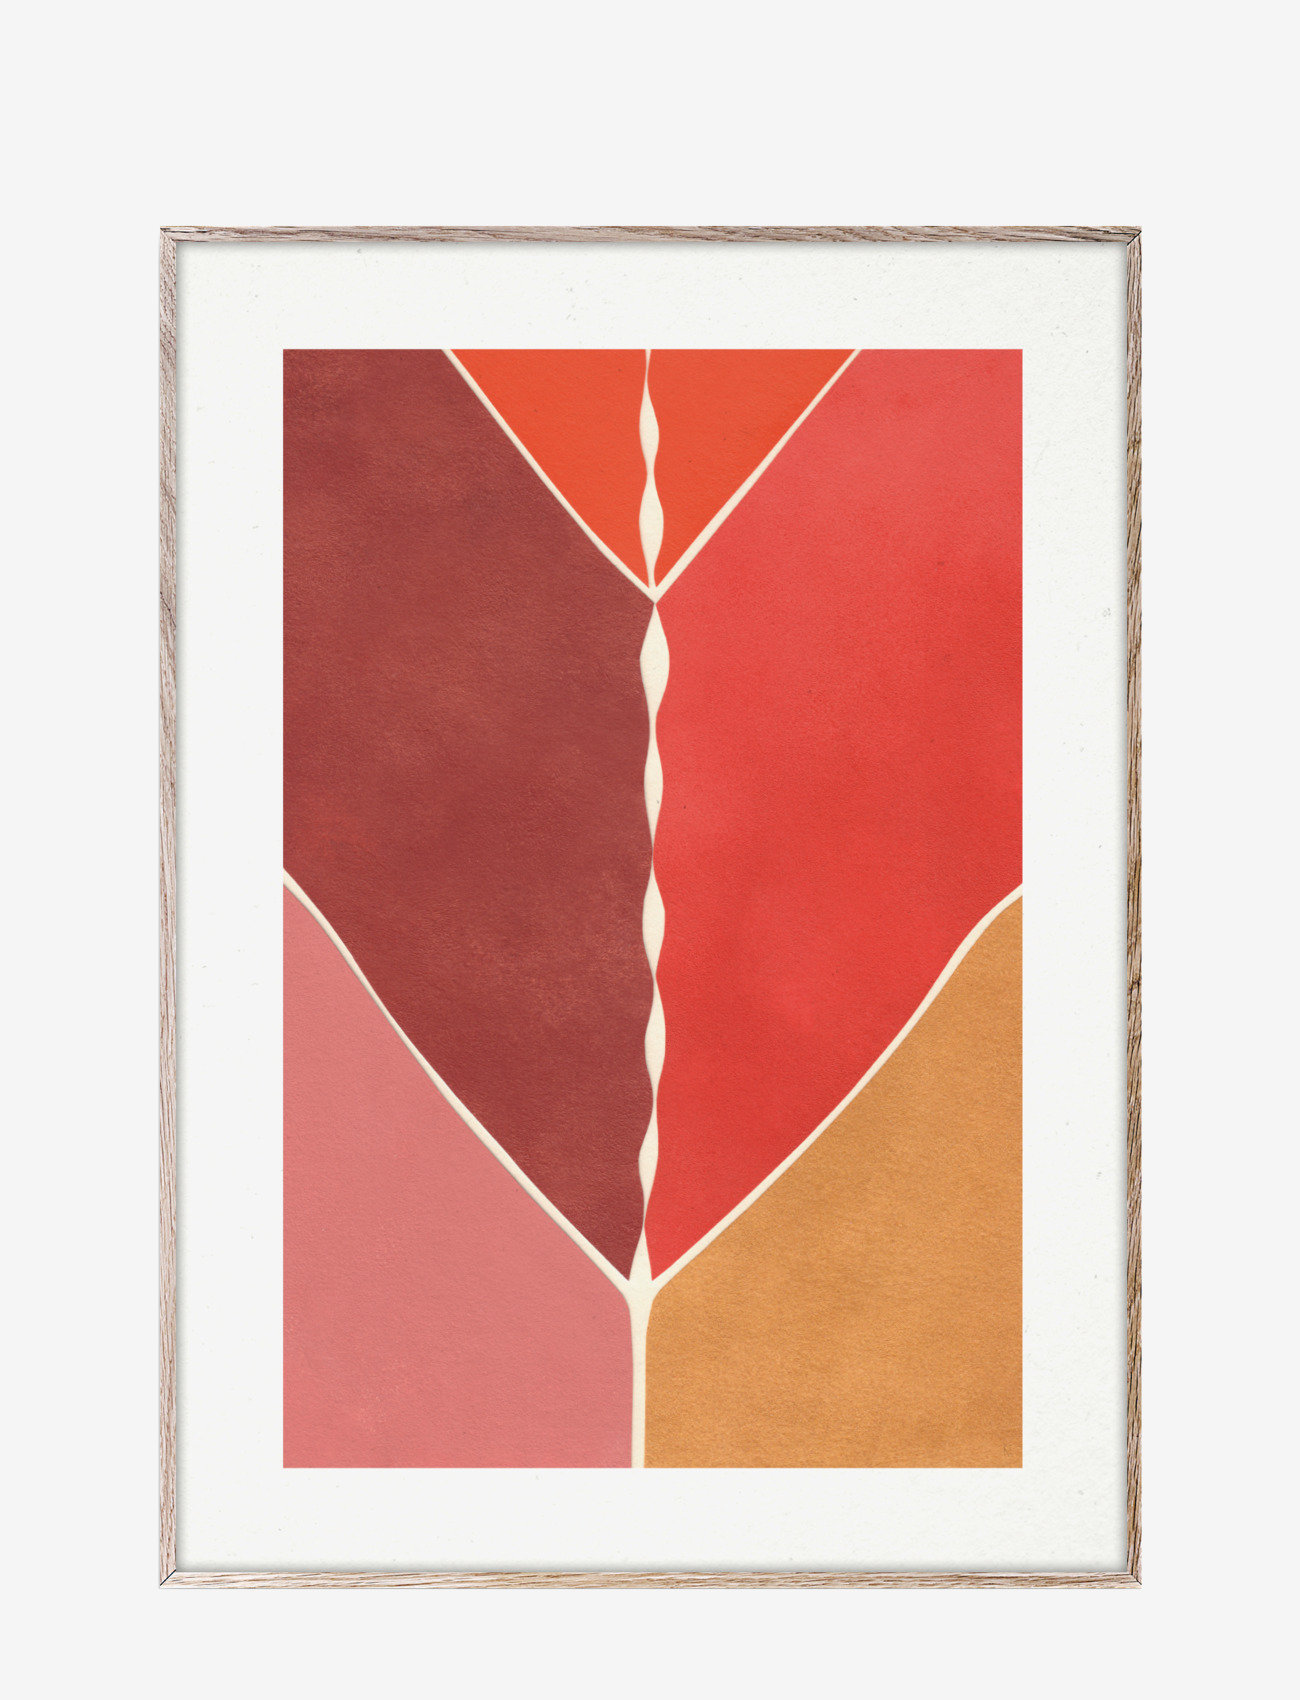 Paper Collective - Navigation - 30x40 cm - zemākās cenas - multi-colour, white, red, yellow, pink, orange - 0